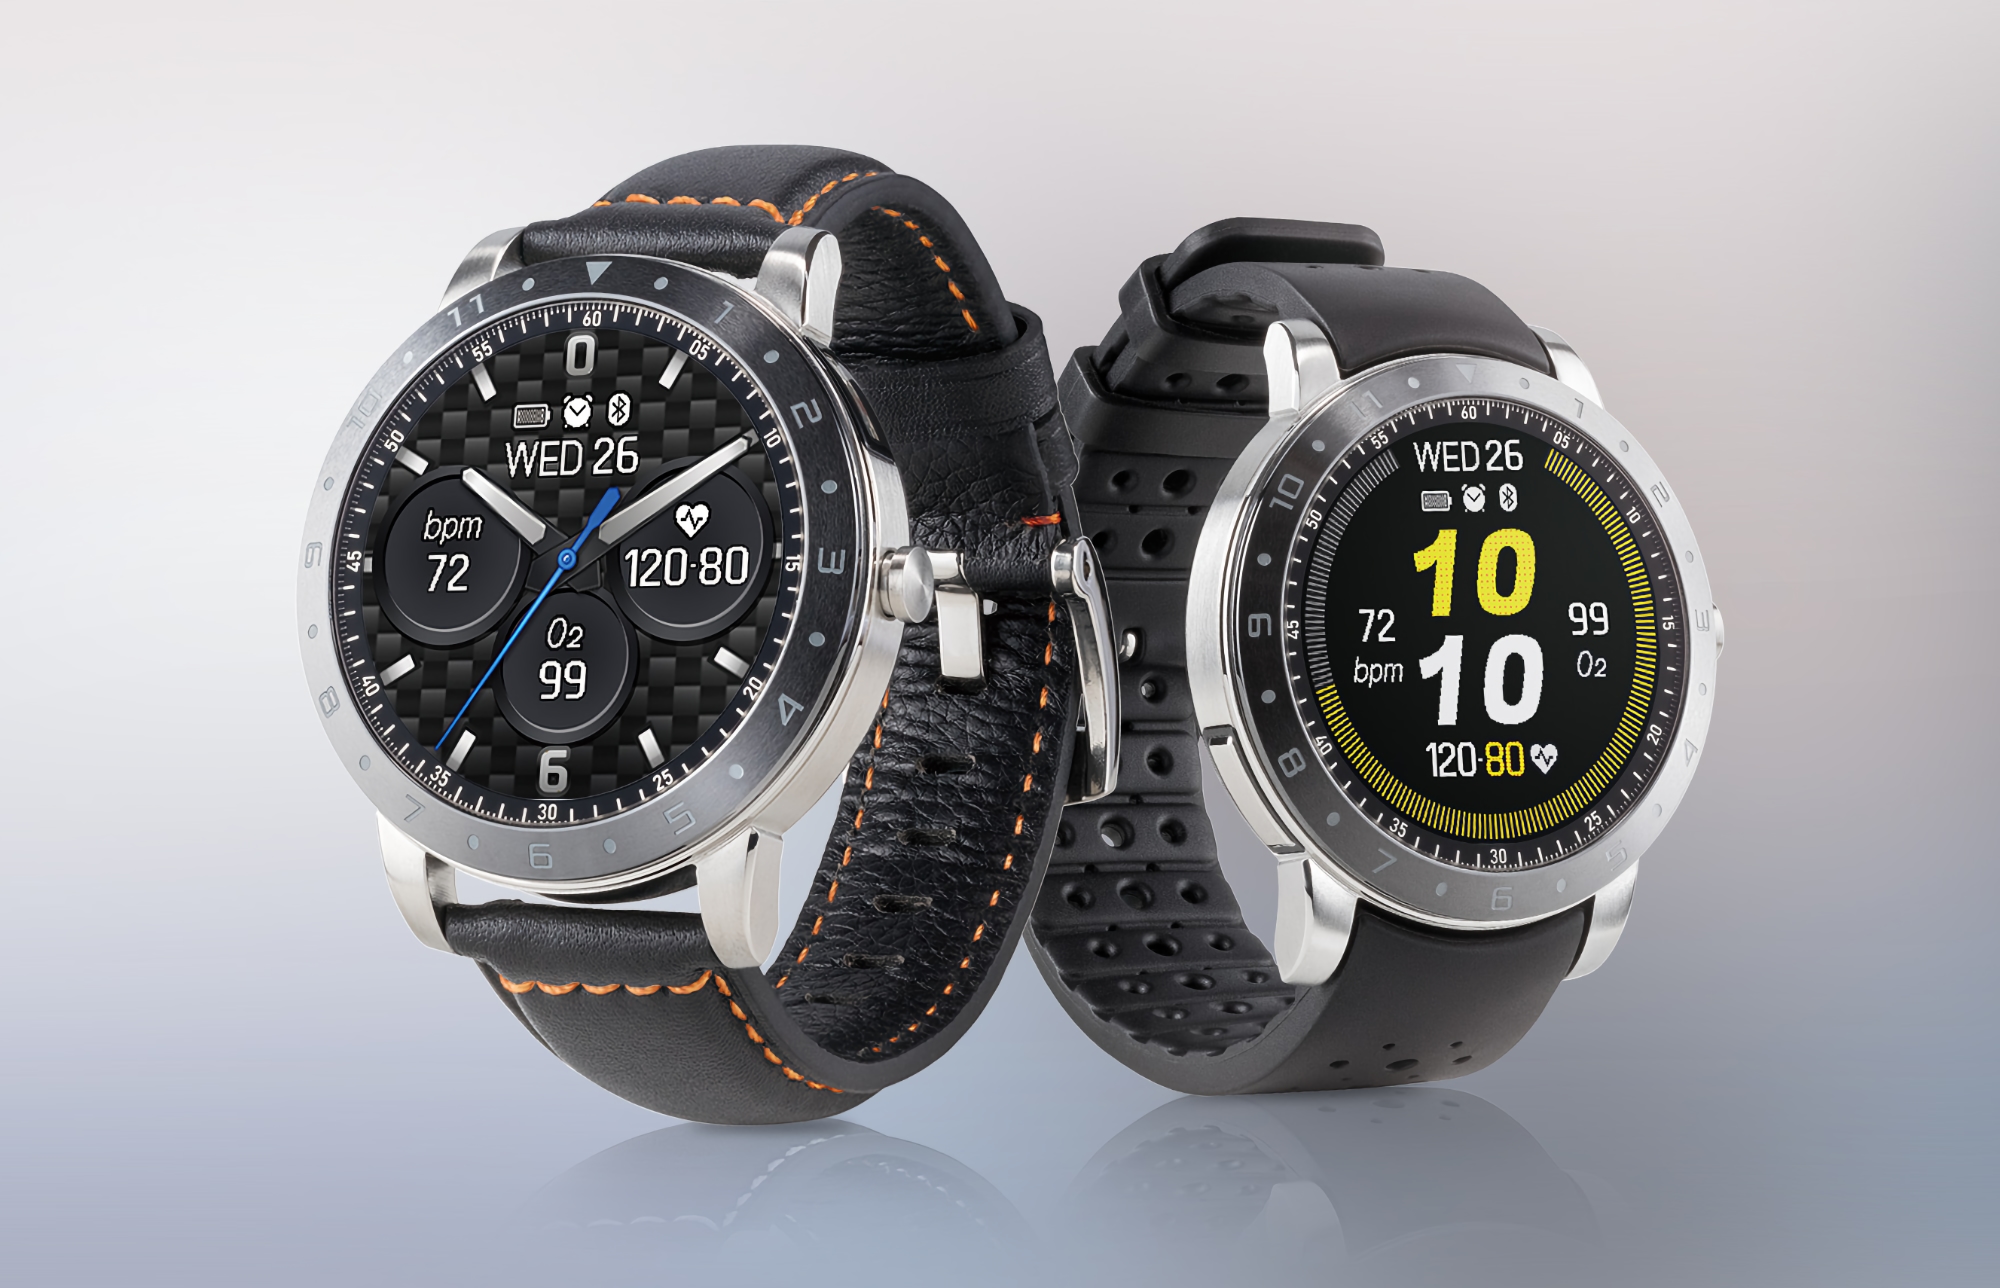 Die ASUS VivoWatch 5 Smartwatch erscheint auf der Website des Unternehmens: OLED-Bildschirm, SpO2-Sensor, NFC und Körpertemperaturmessfunktion